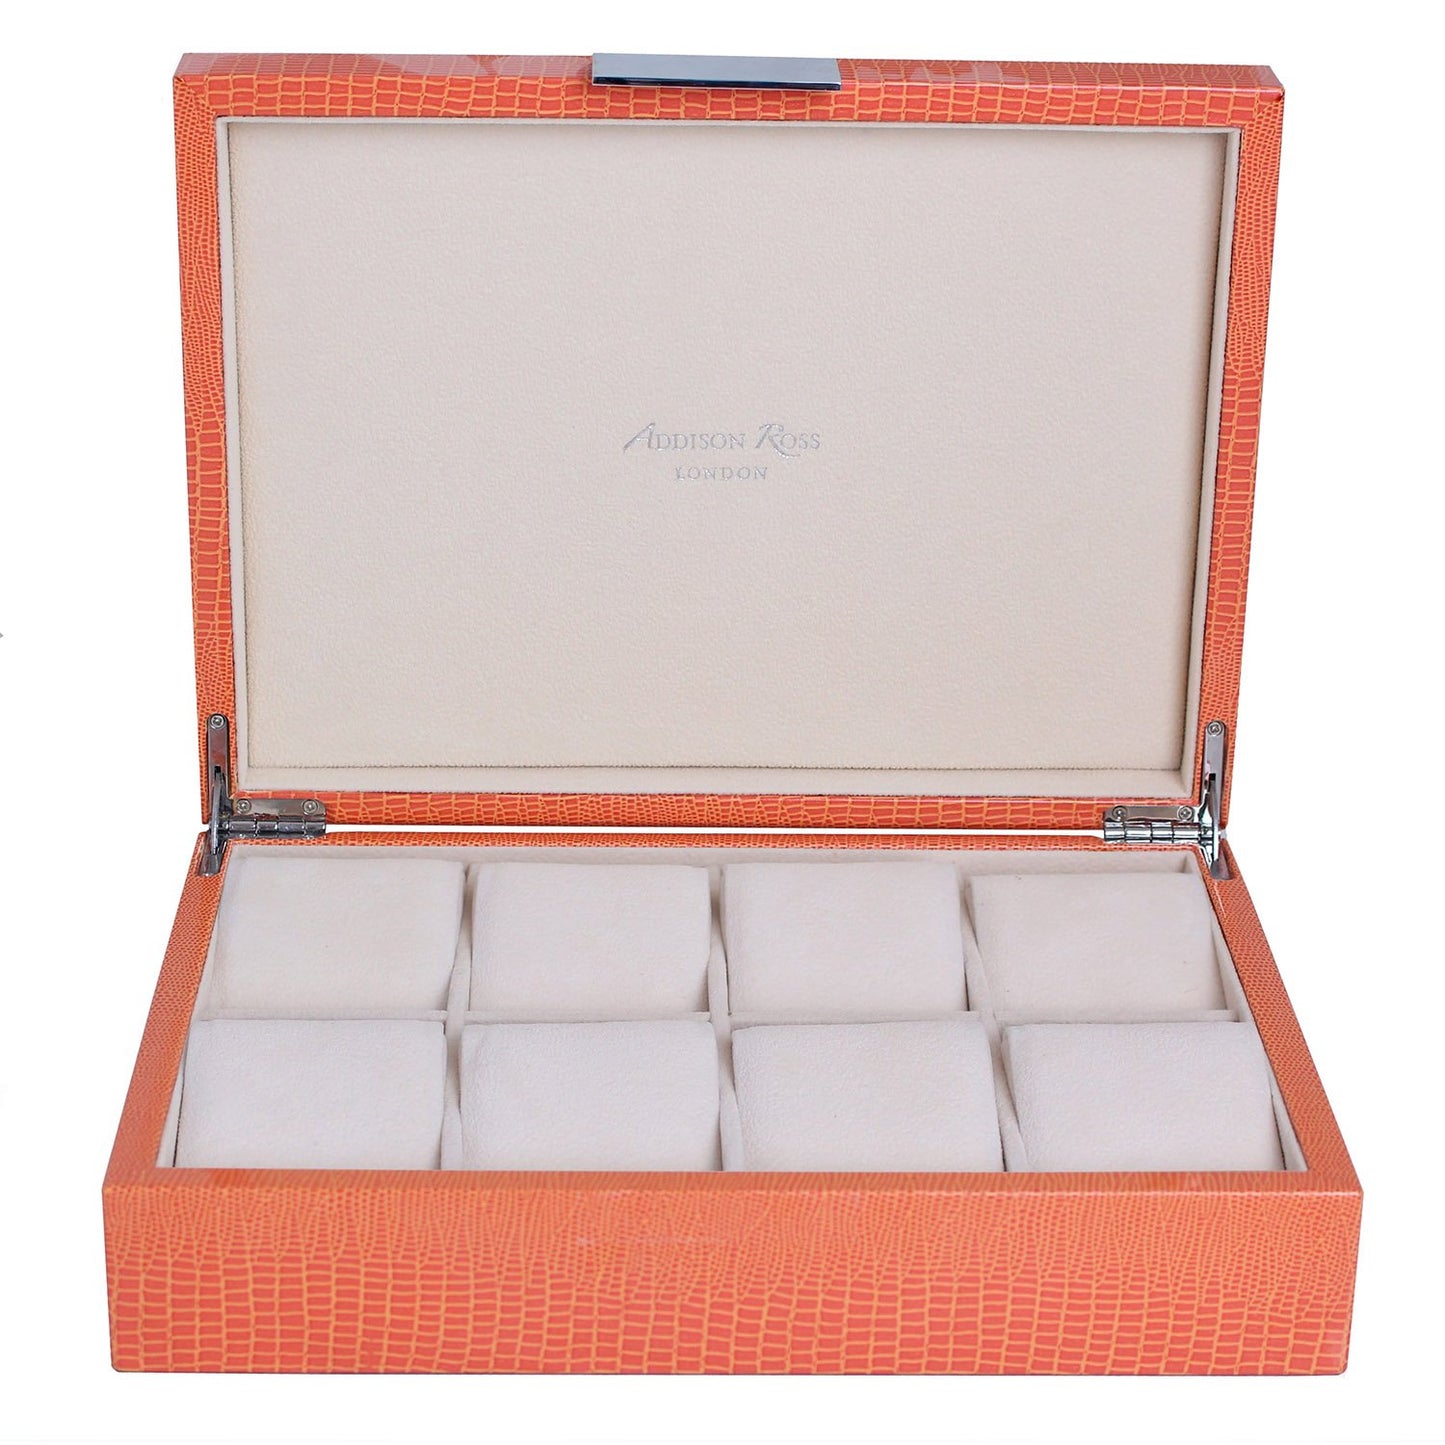 Caja para relojes grande de cocodrilo naranja y plata